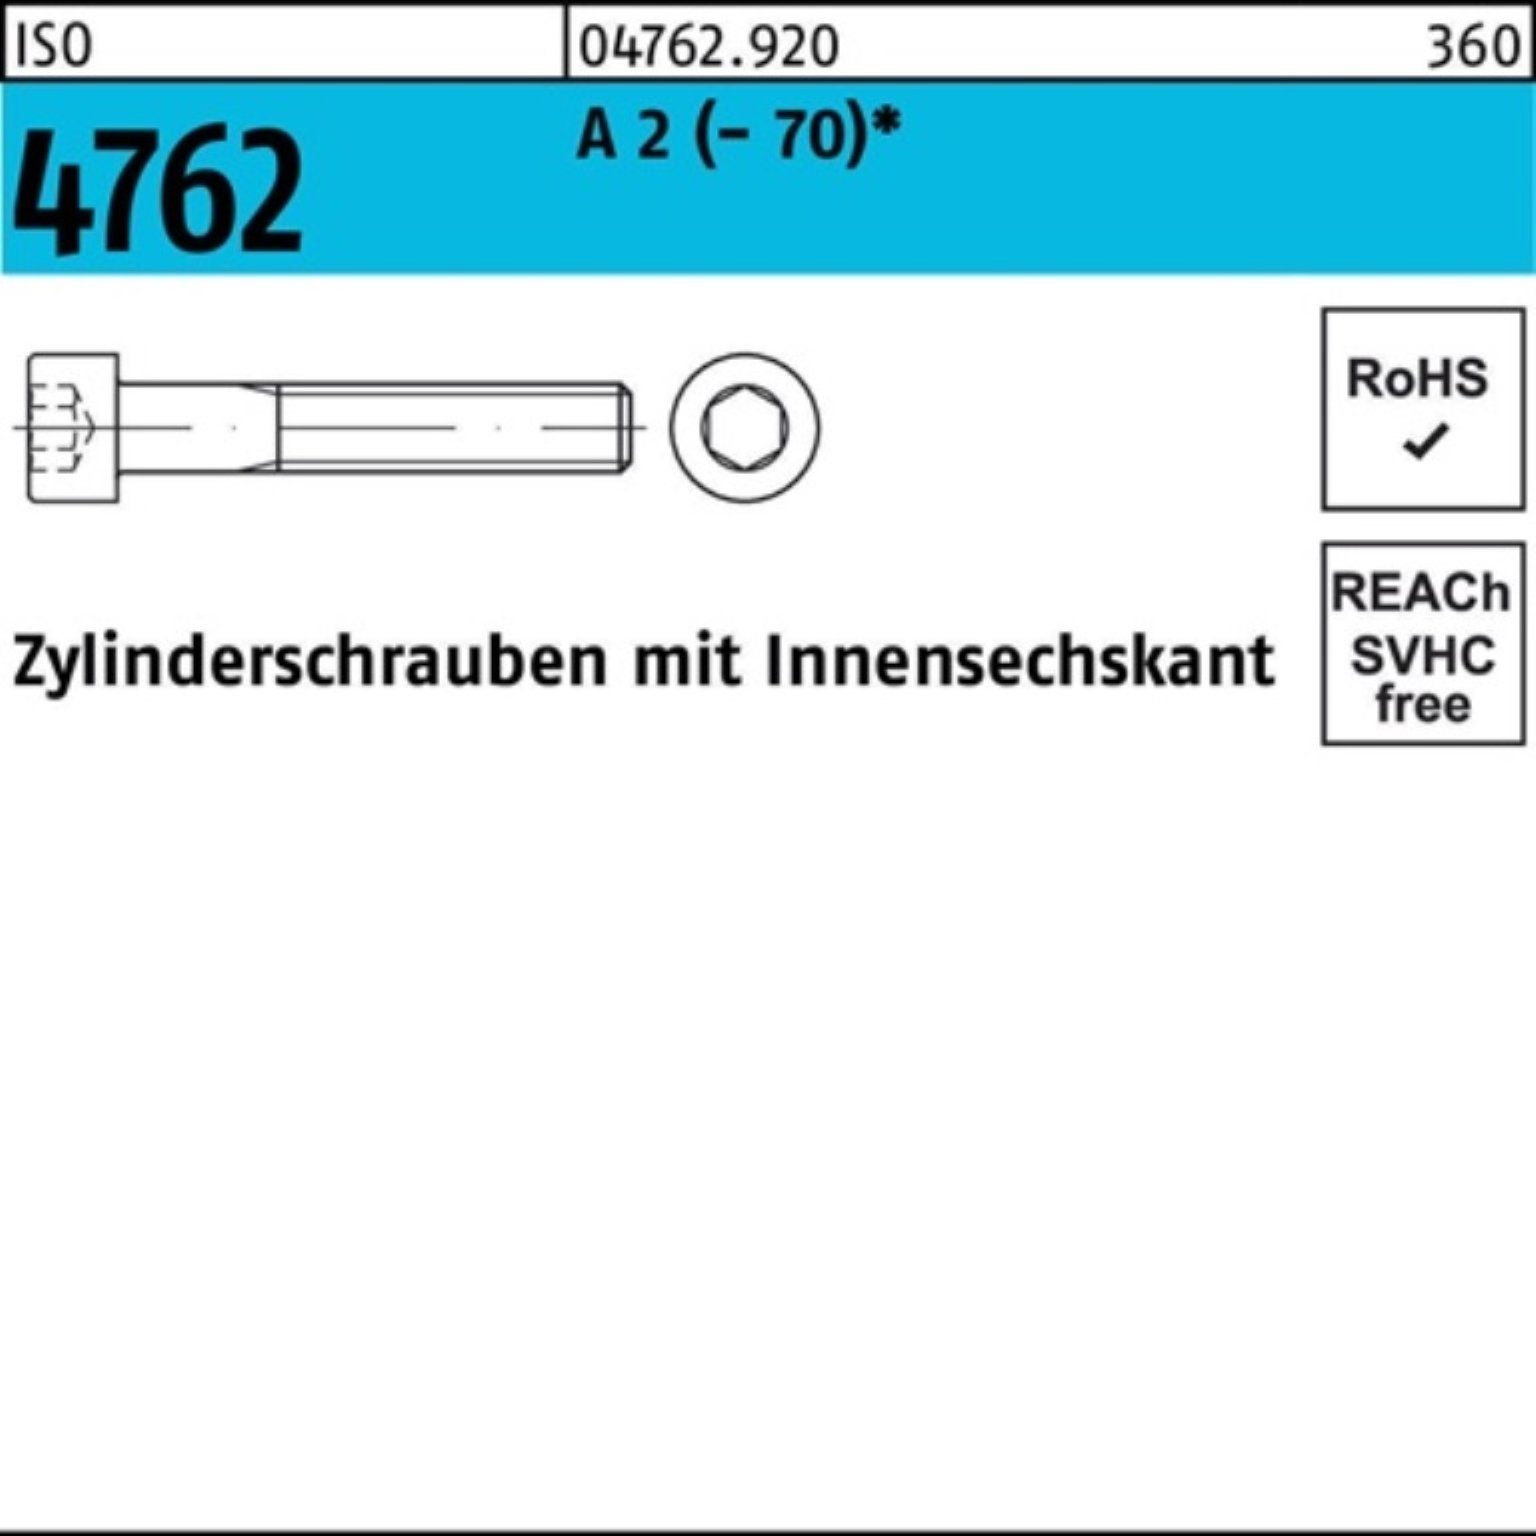 Reyher Zylinderschraube 100er 2 (70) Innen-6kt 100 Pack Zylinderschraube A 100 ISO M10x 4762